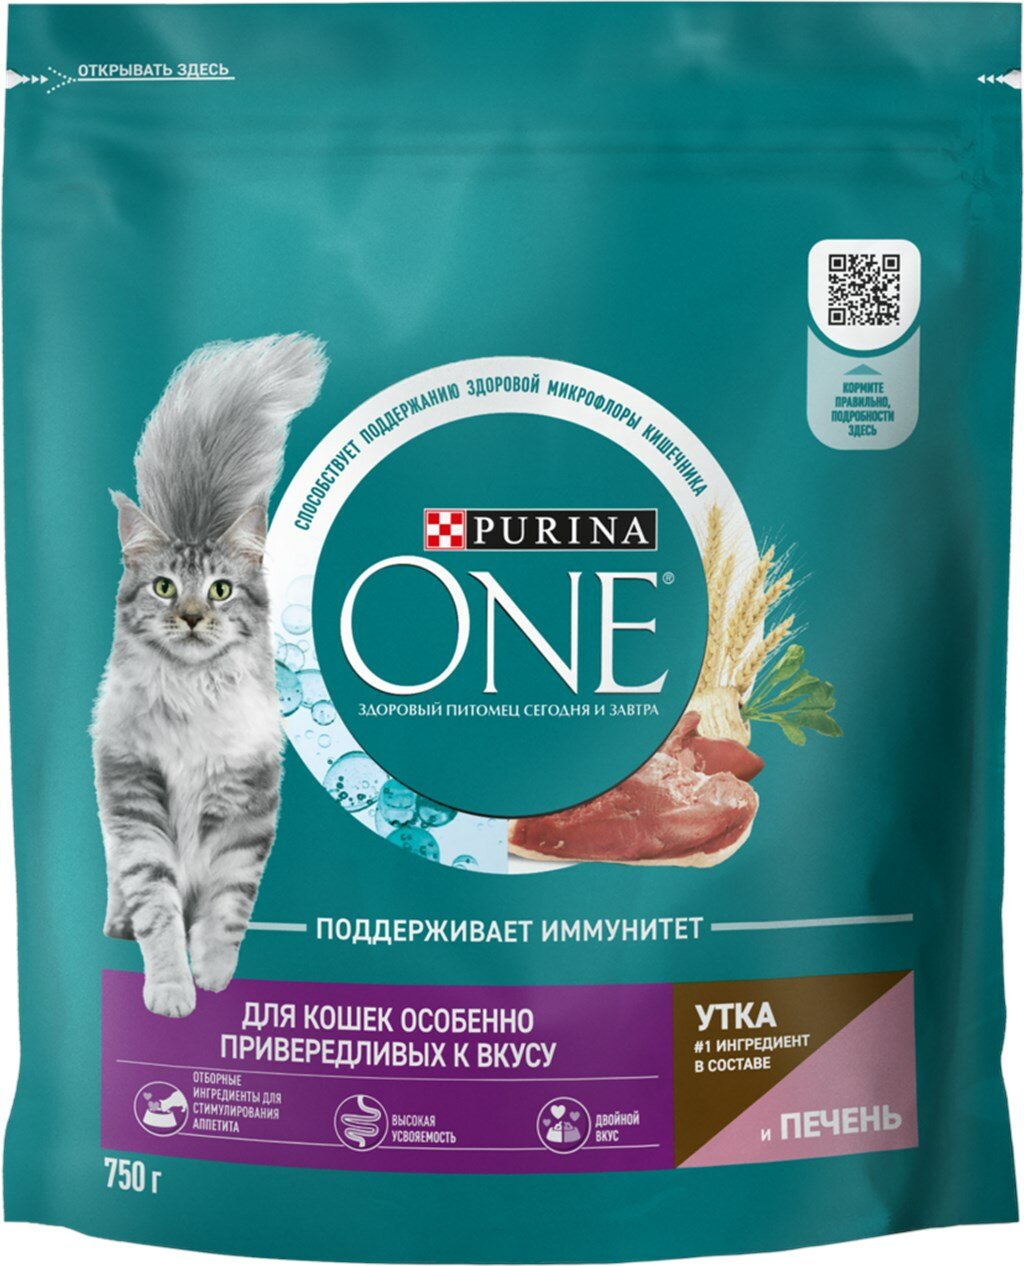 PURINA ONE для взрослых кошек особенно привередливых к вкусу с уткой и печенью 0,75 кг